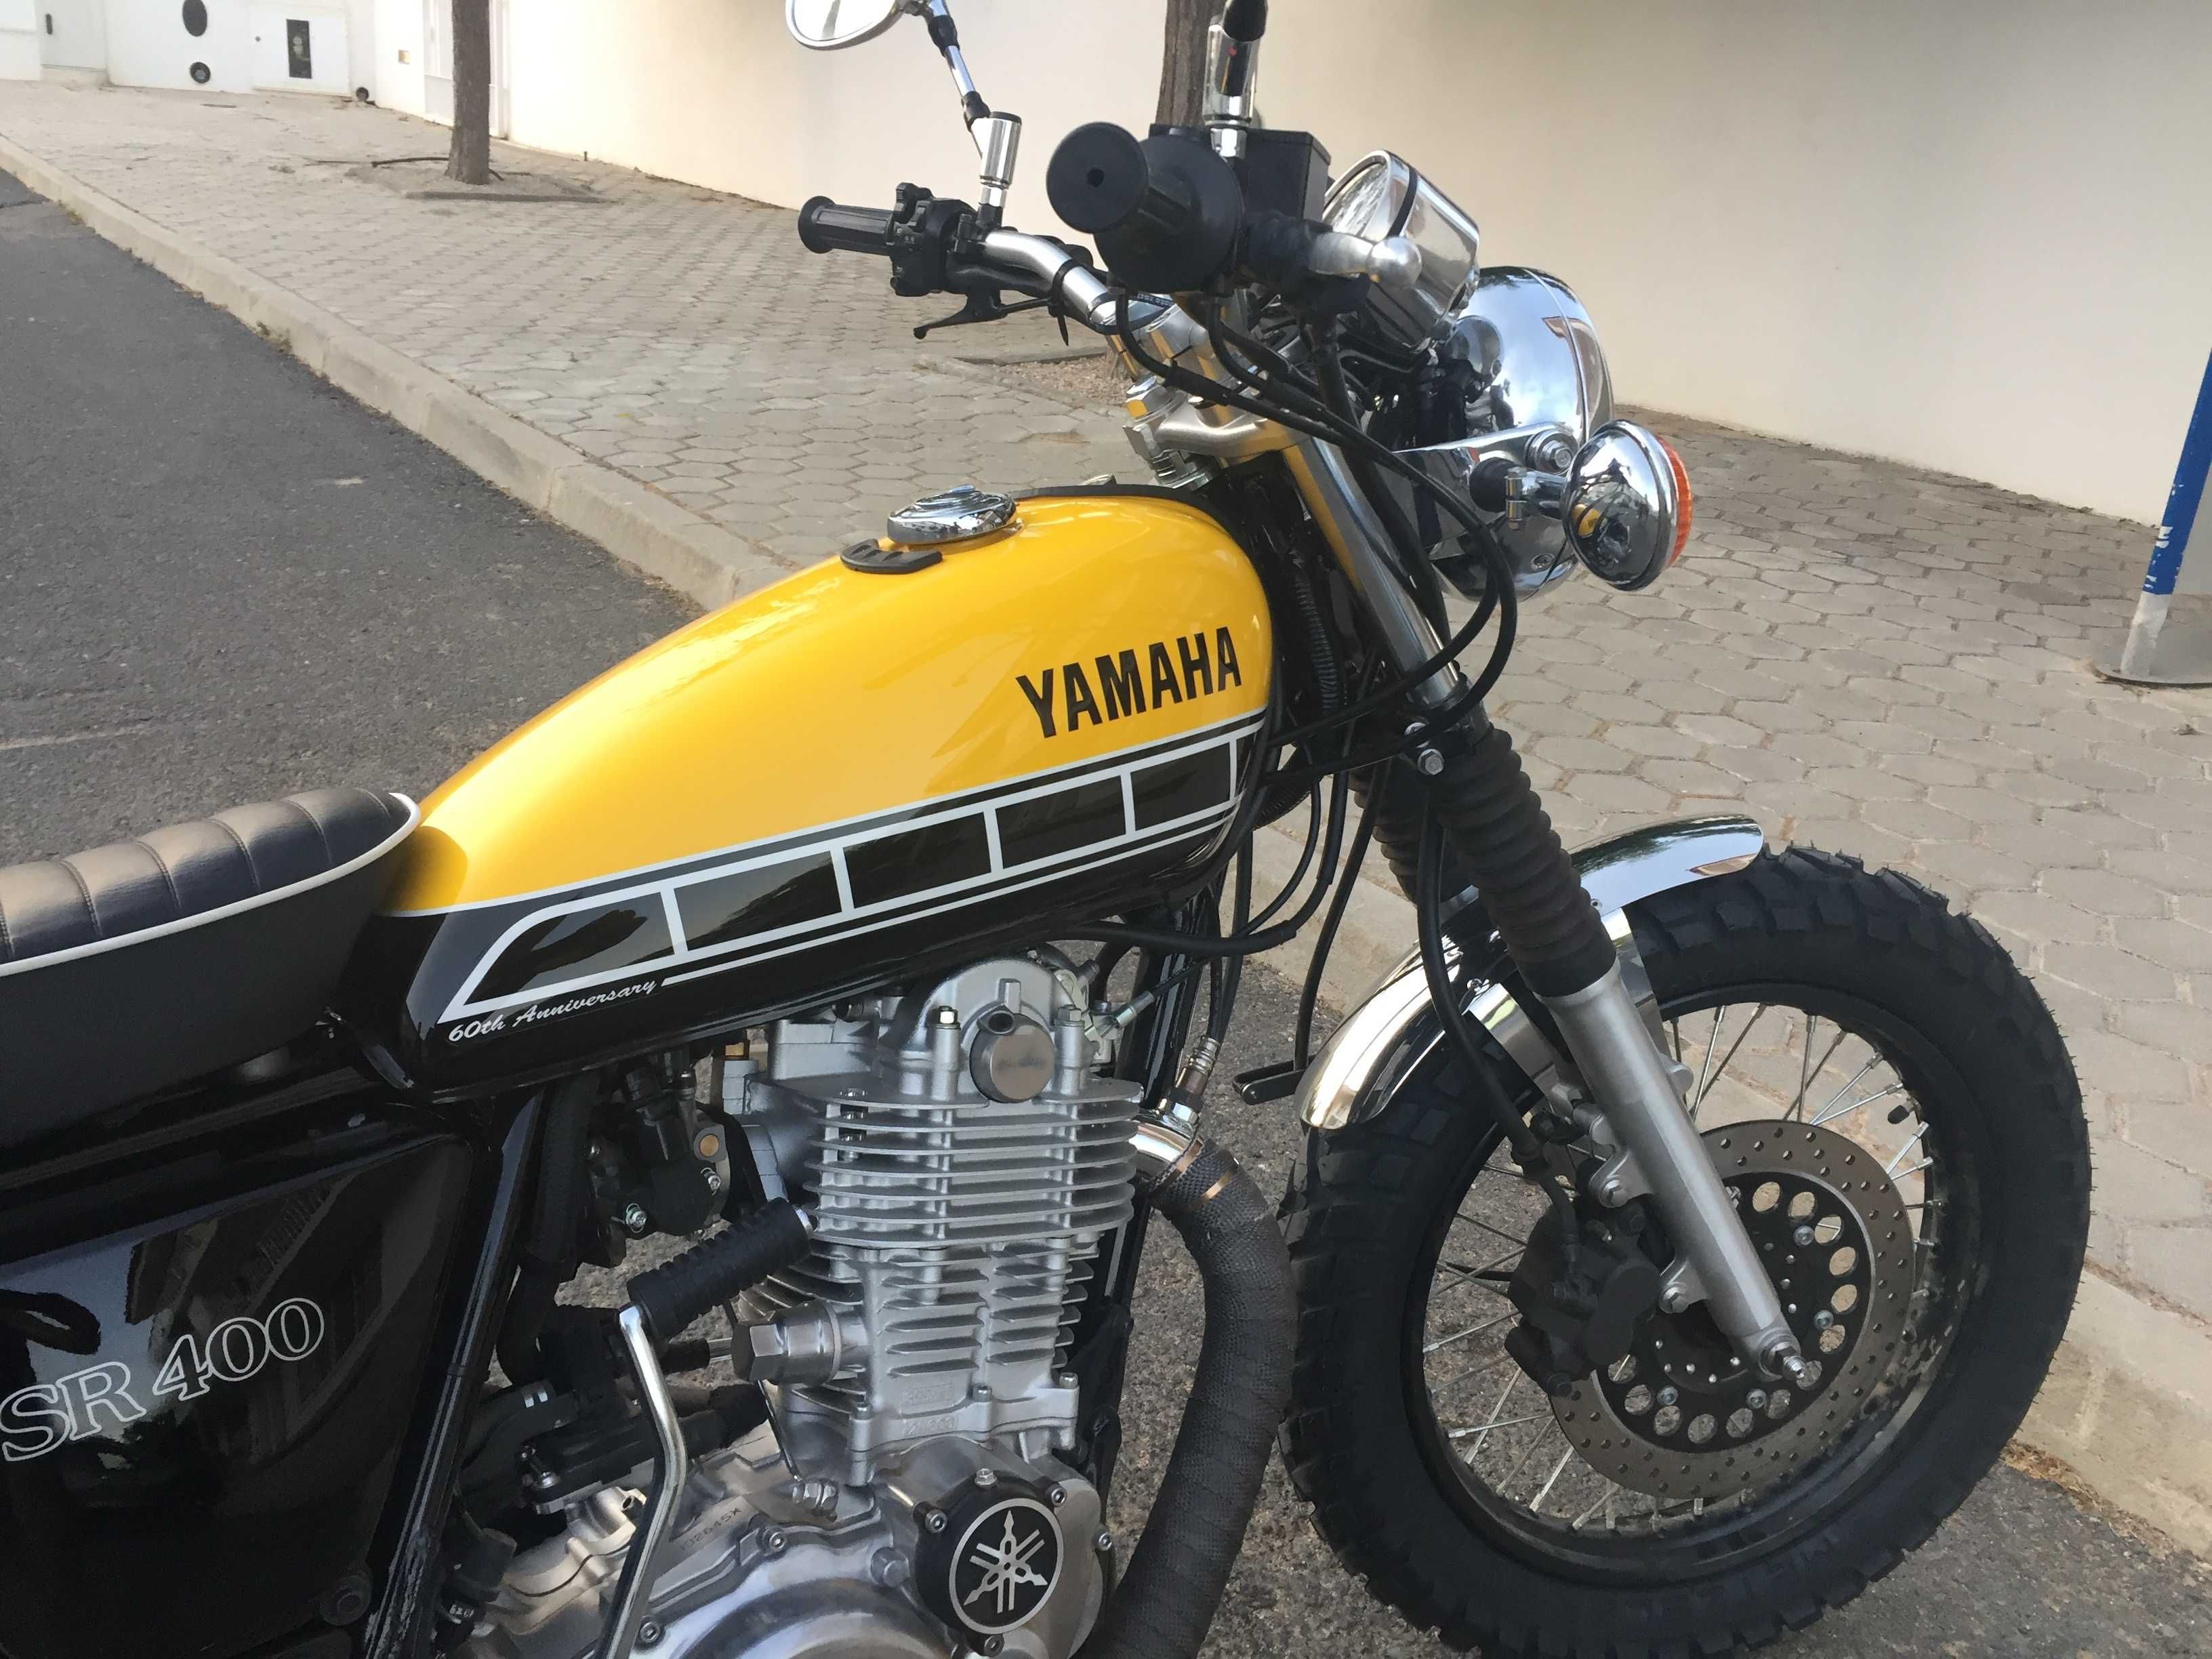 Yamaha, Scrambler